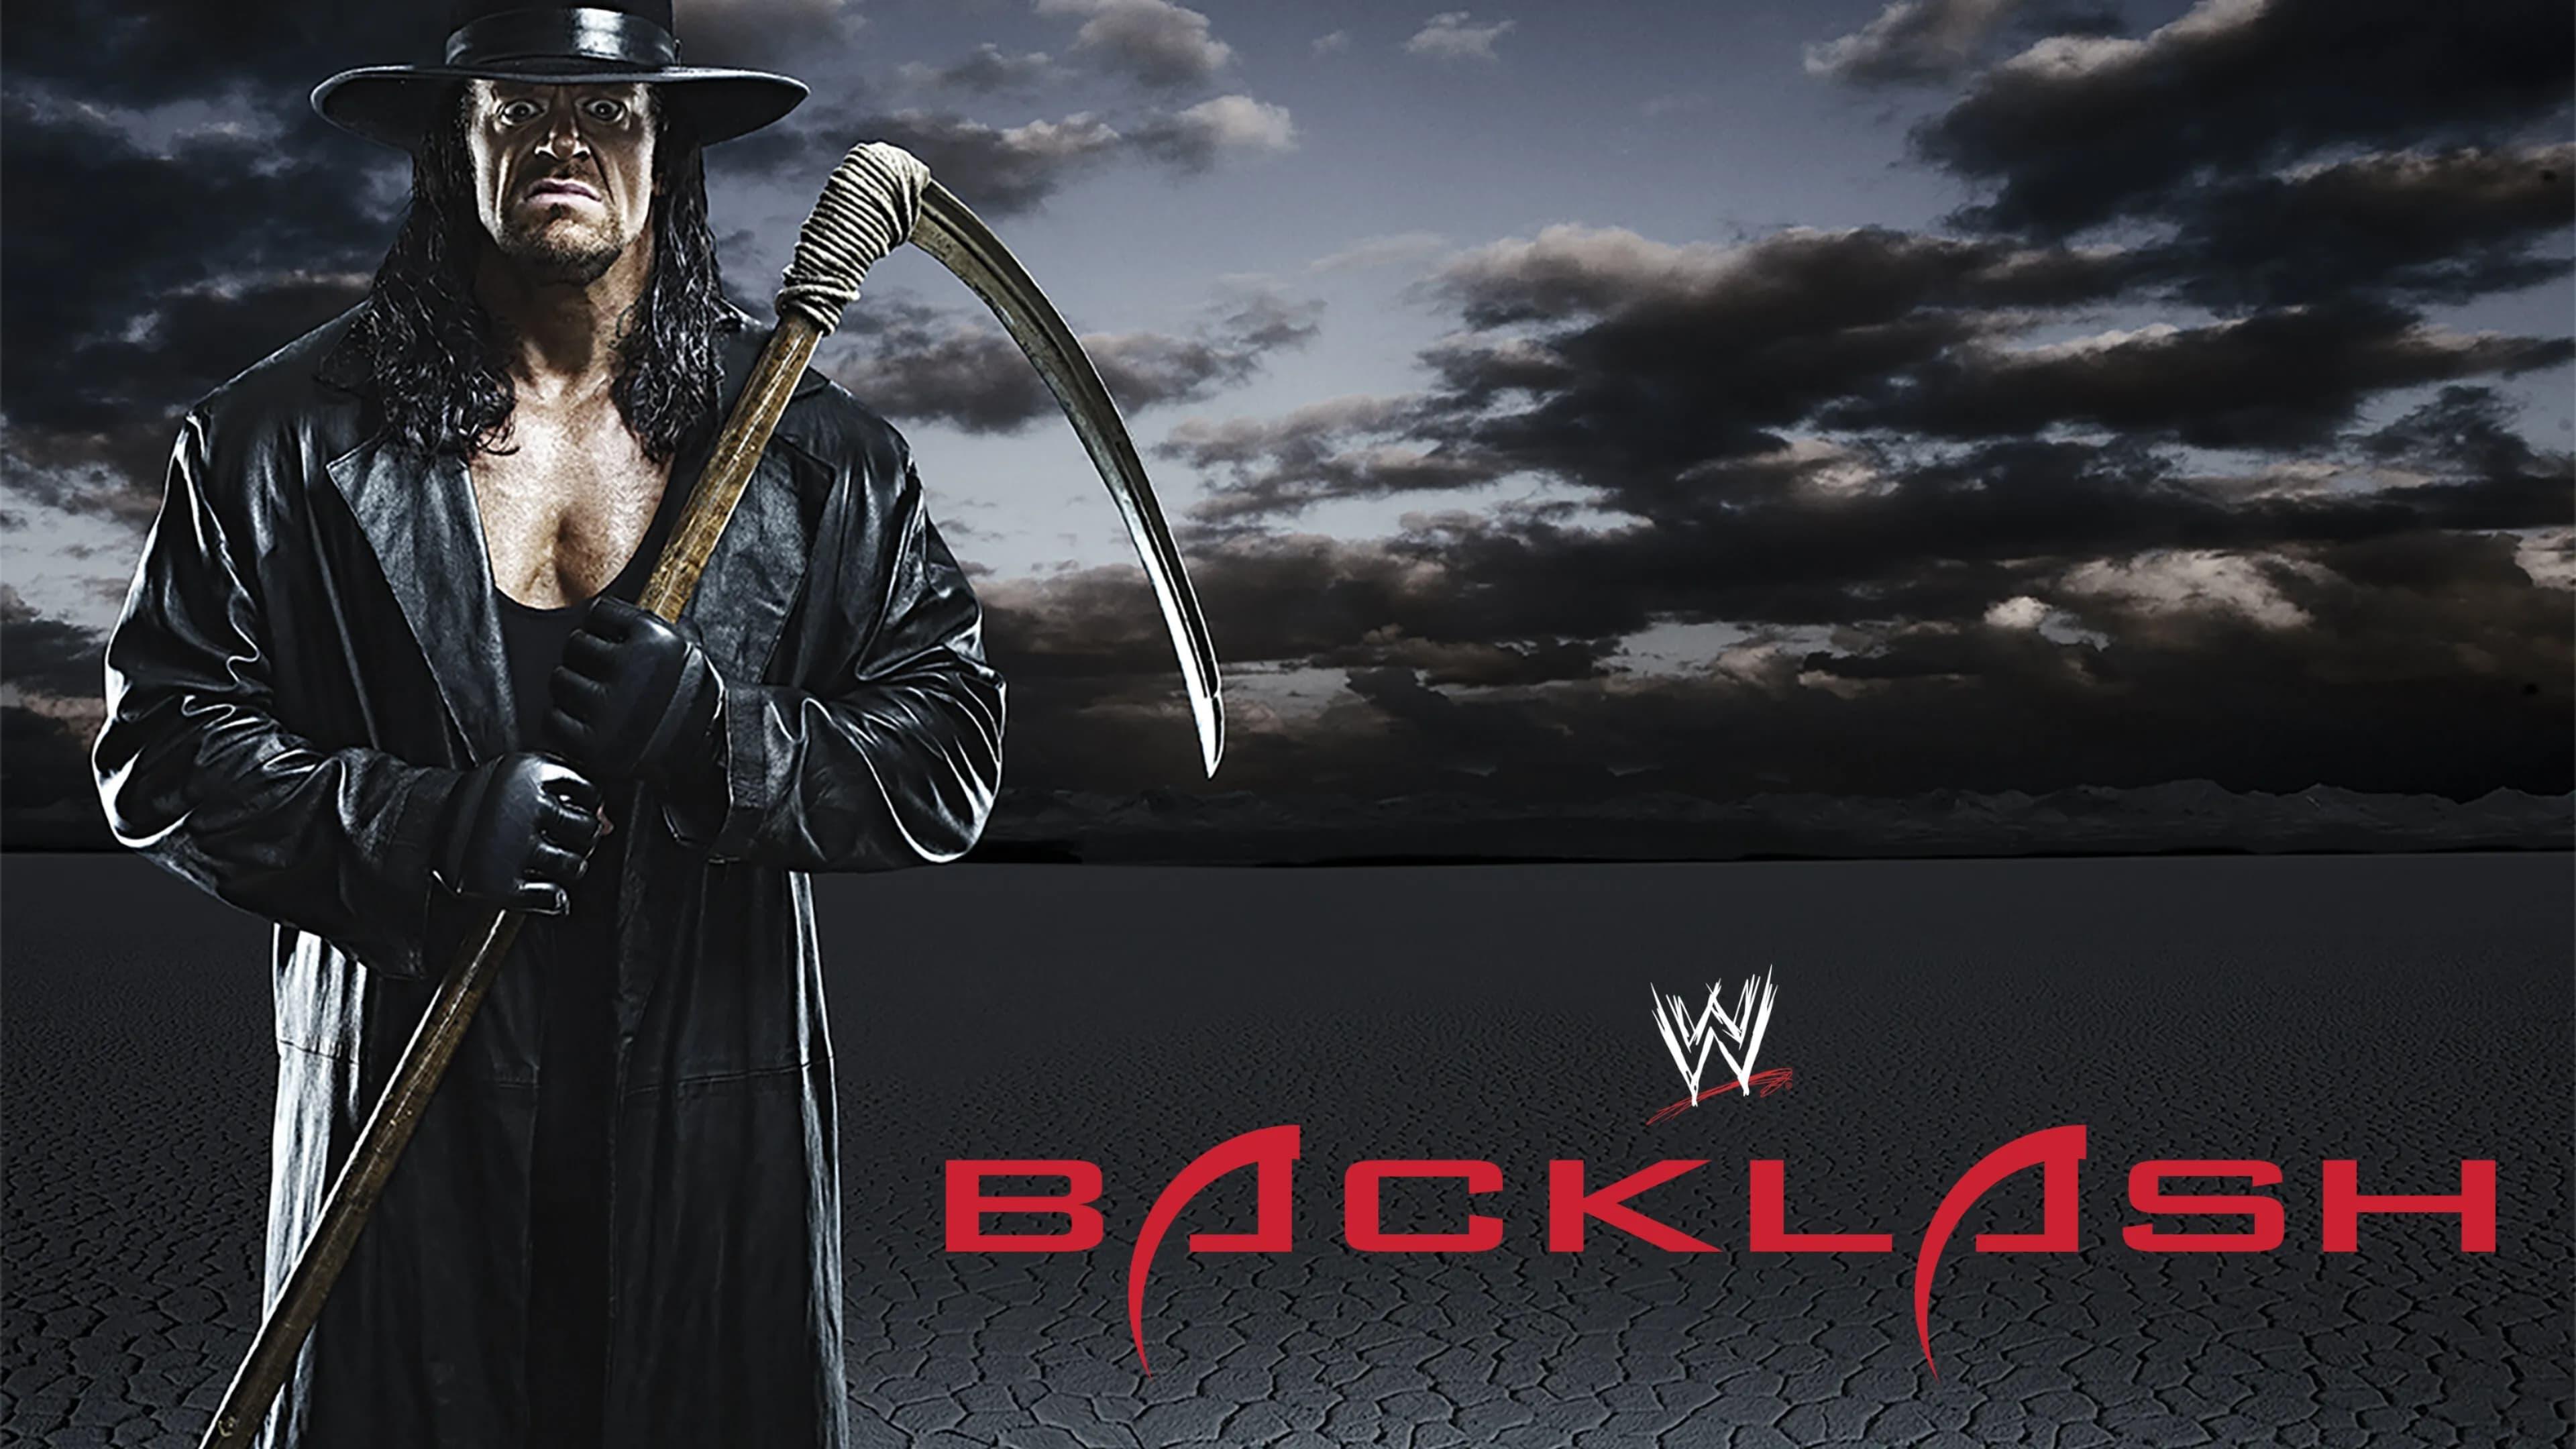 WWE Backlash 2008 backdrop